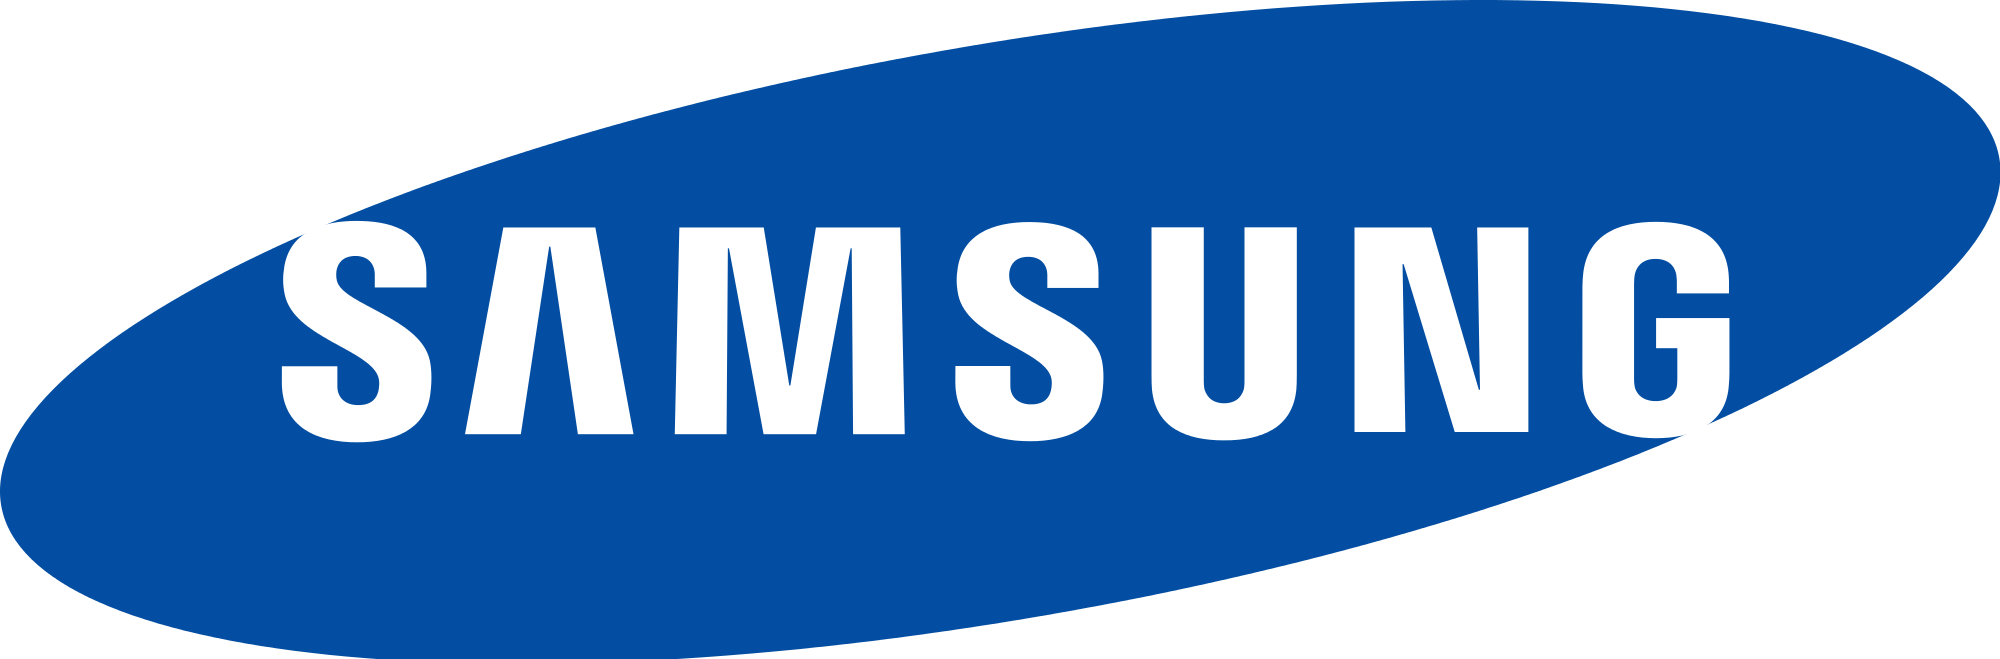 Samsung Android Wiki | Fandom: Hãy khám phá thêm về Samsung Android Wiki trên Fandom để có cái nhìn tổng quan về nền tảng Android của Samsung. Từ những chức năng tiện ích đến các tính năng đặc biệt, bạn sẽ khám phá được những điều thú vị về sản phẩm của Samsung. Hãy tận hưởng trải nghiệm tuyệt vời này để hiểu rõ hơn về Samsung và nền tảng Android của họ.